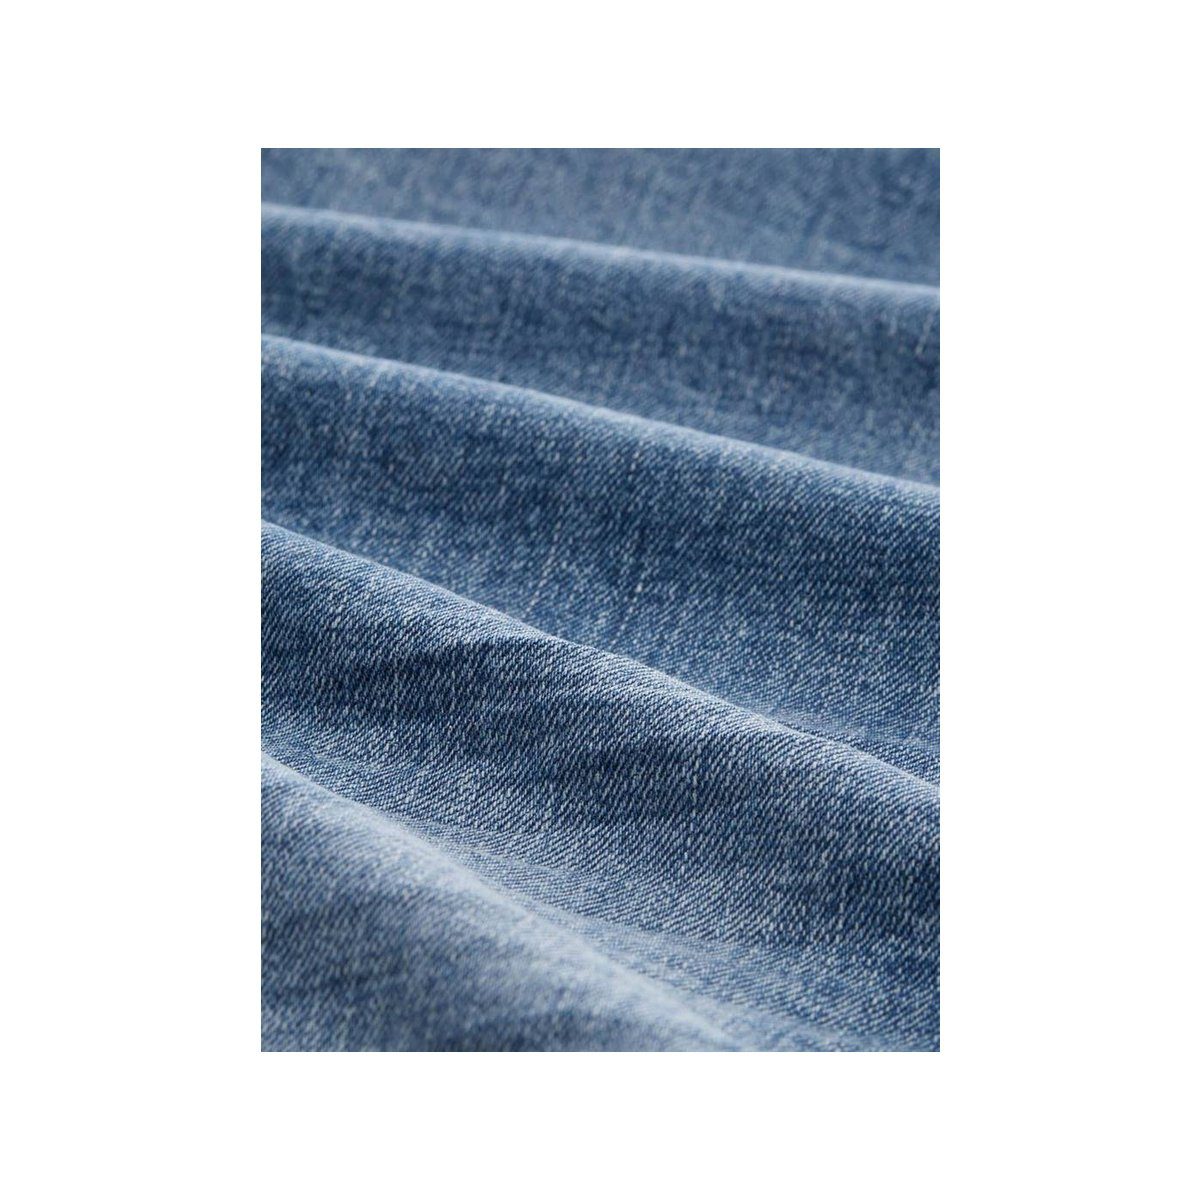 TAILOR TOM 5-Pocket-Jeans uni (1-tlg)